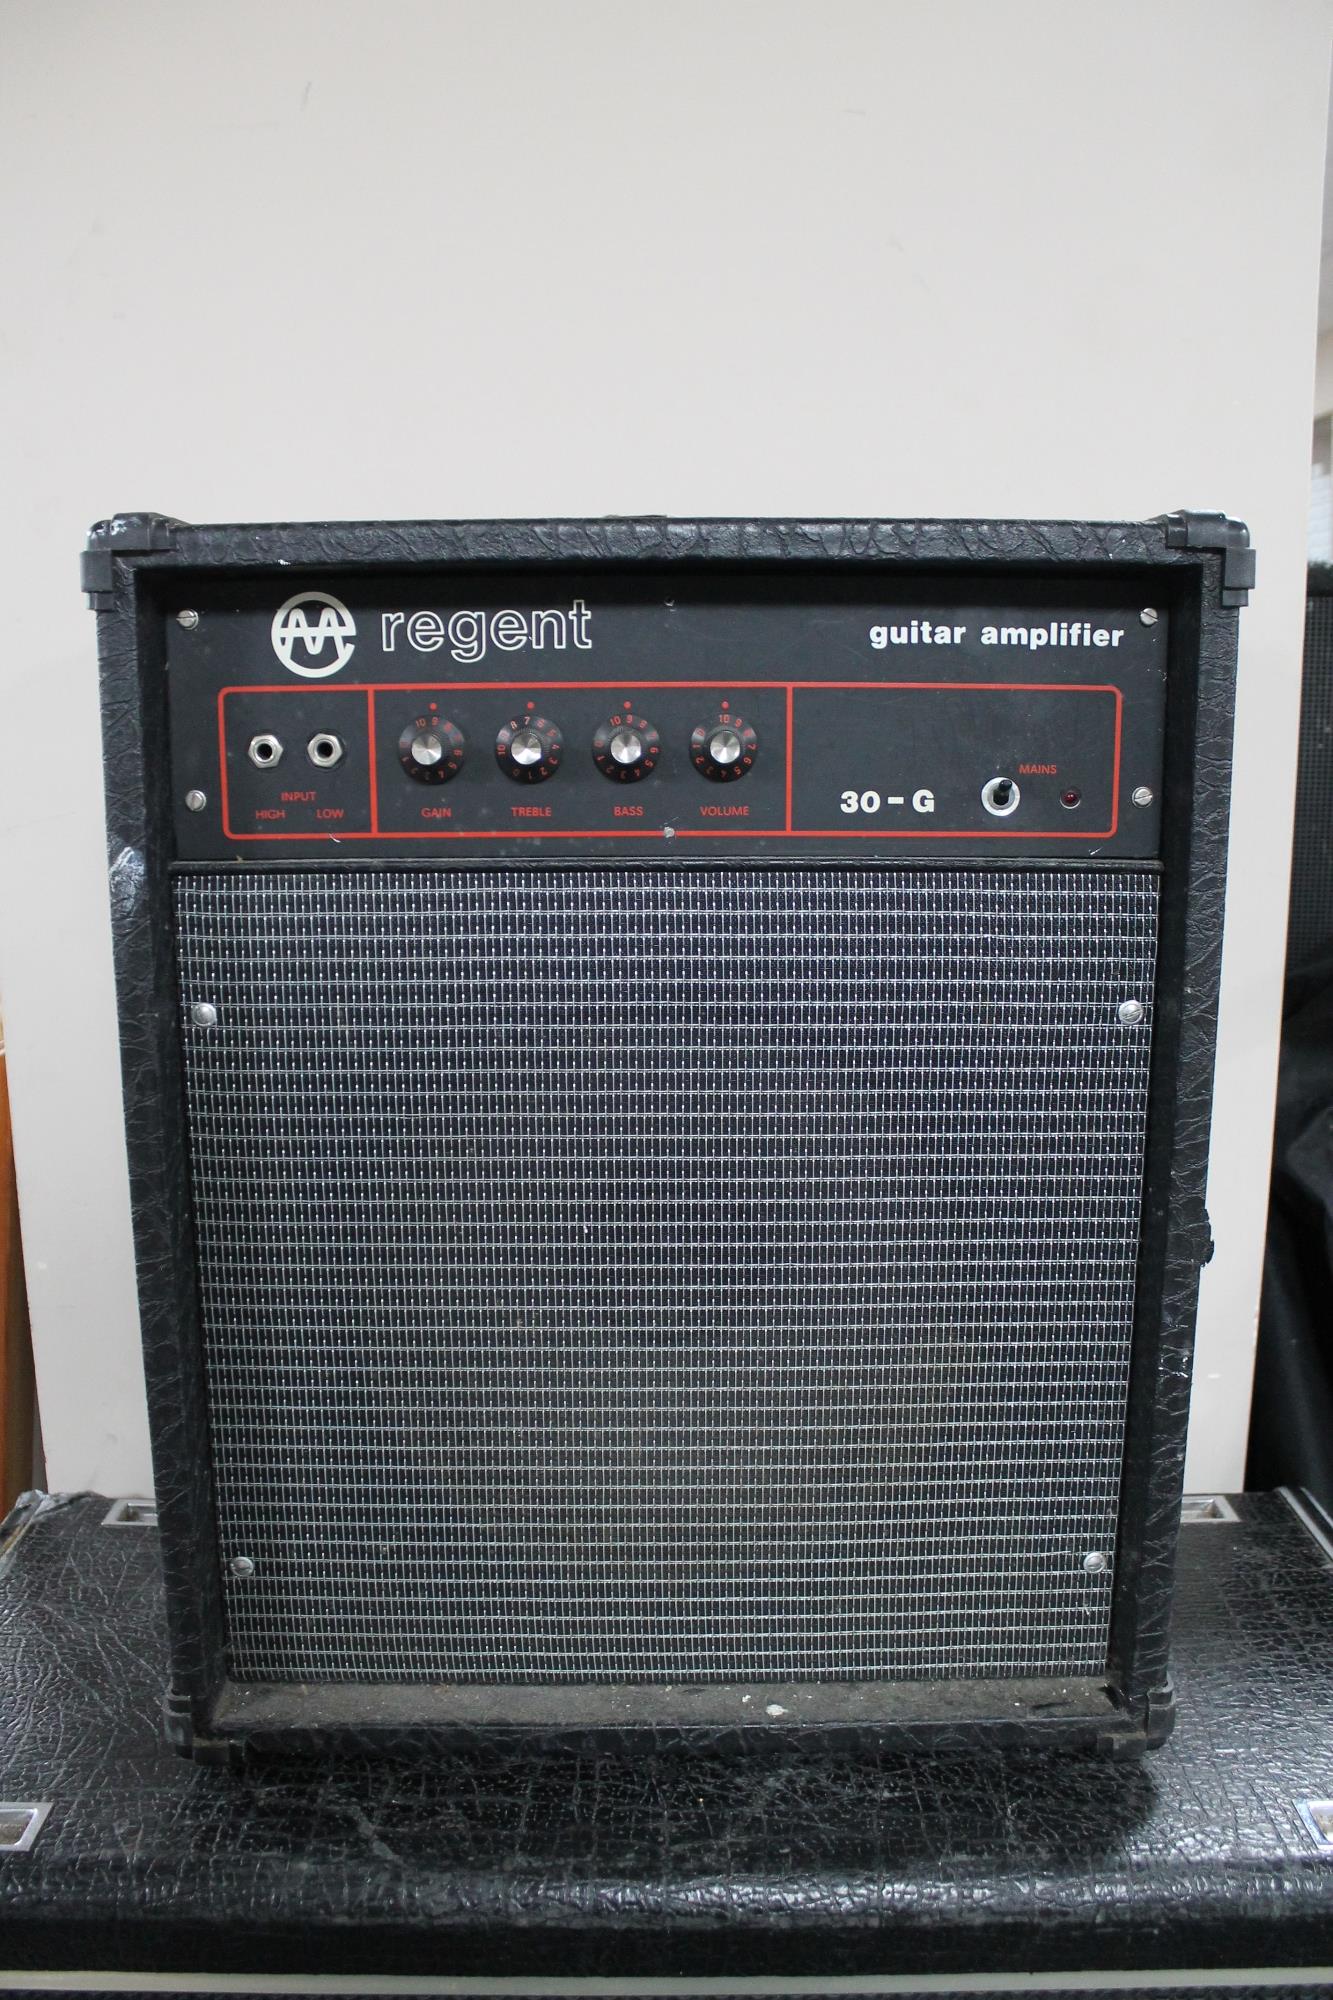 A Regent 30-G guitar amplifier